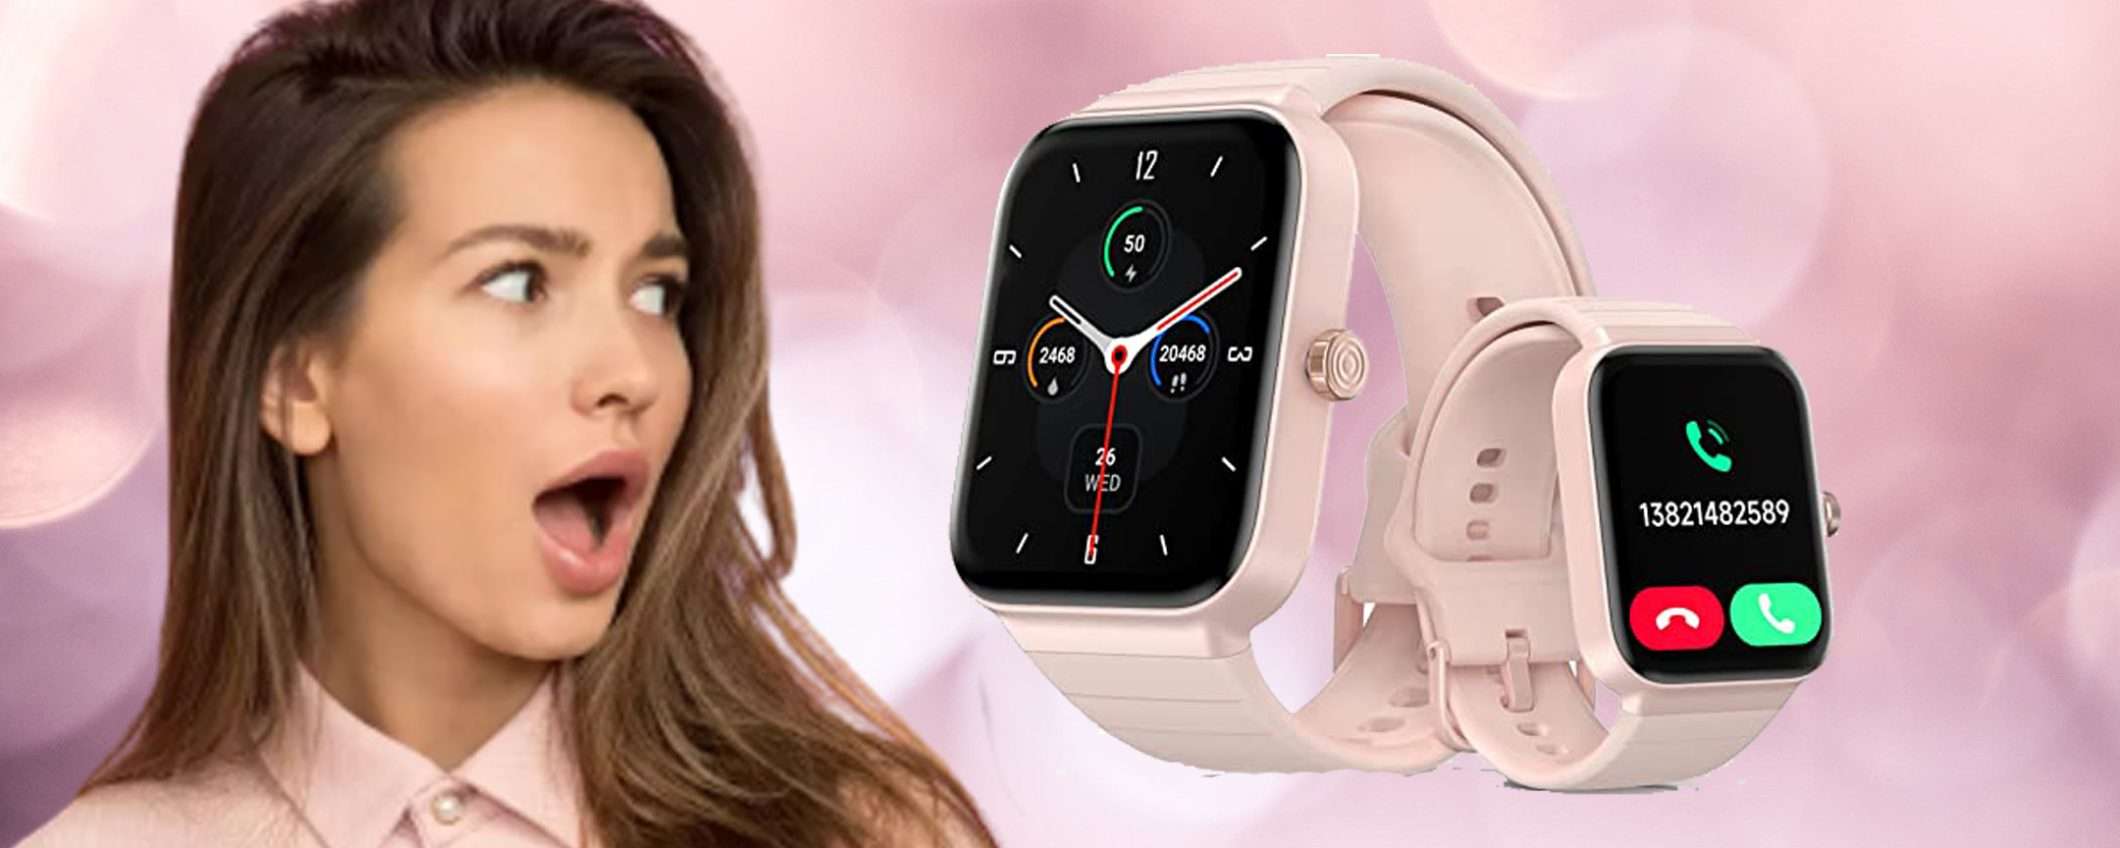 Smartwatch donna con Alexa integrato: doppio sconto con codice promo